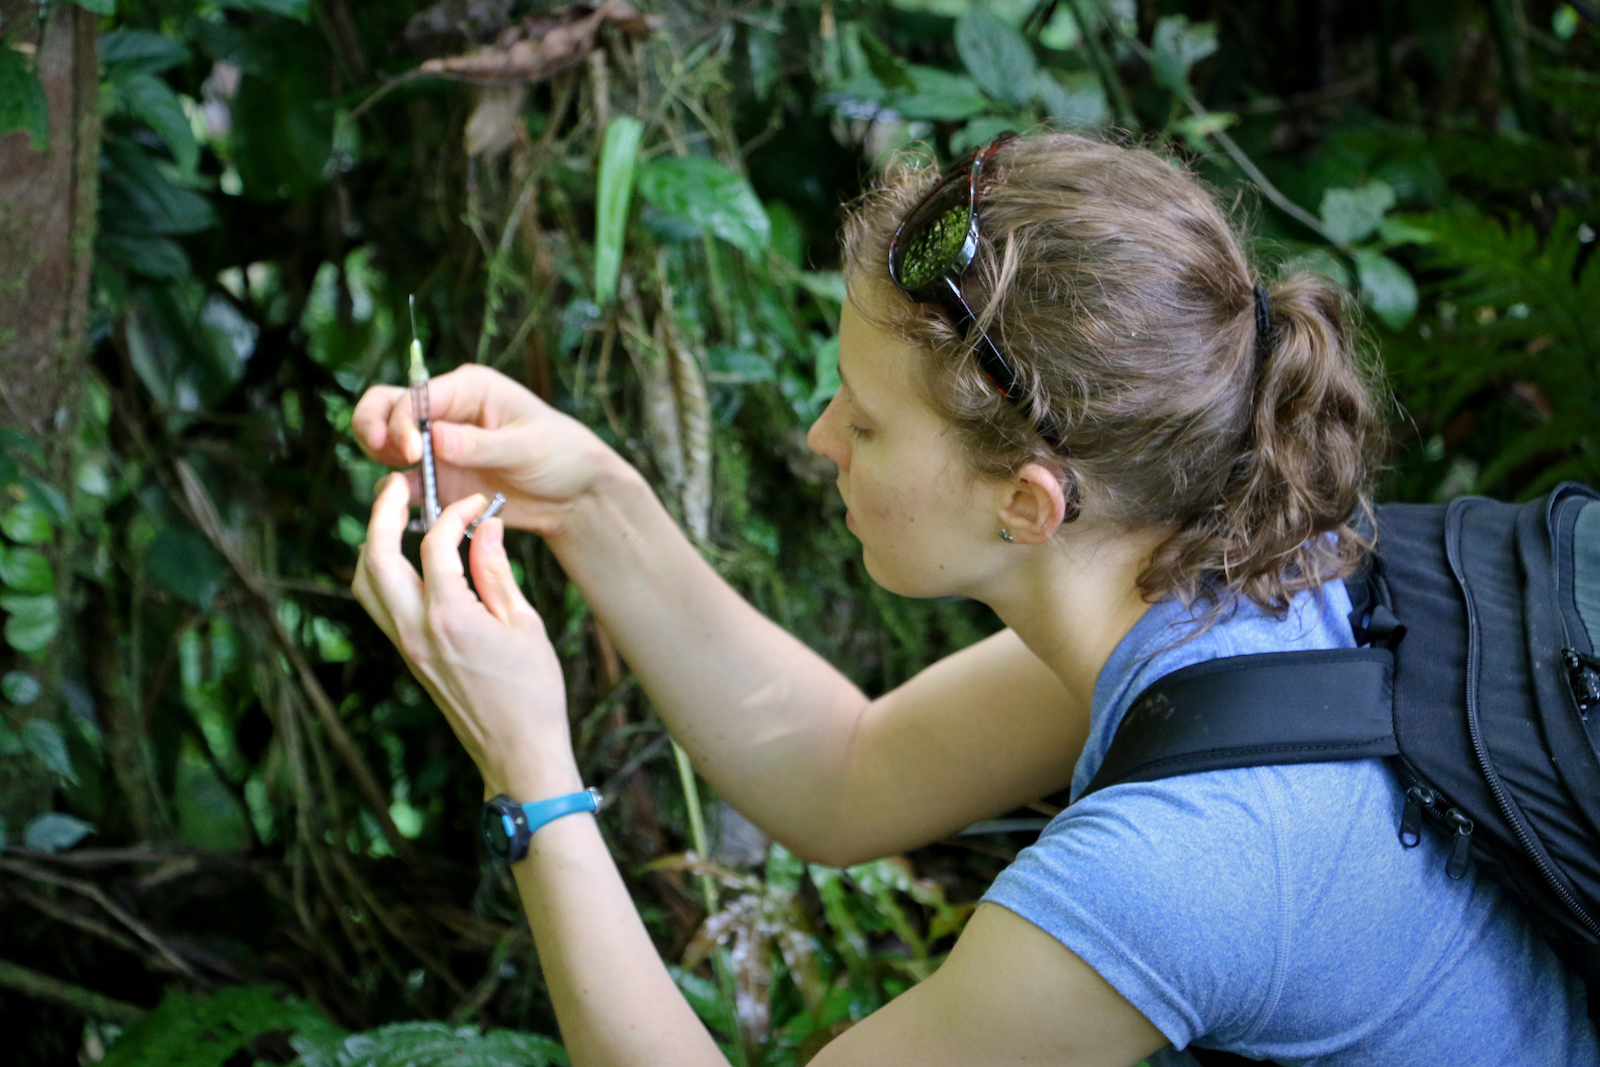 Costa Rica Wilderness First Responder (WFR) course